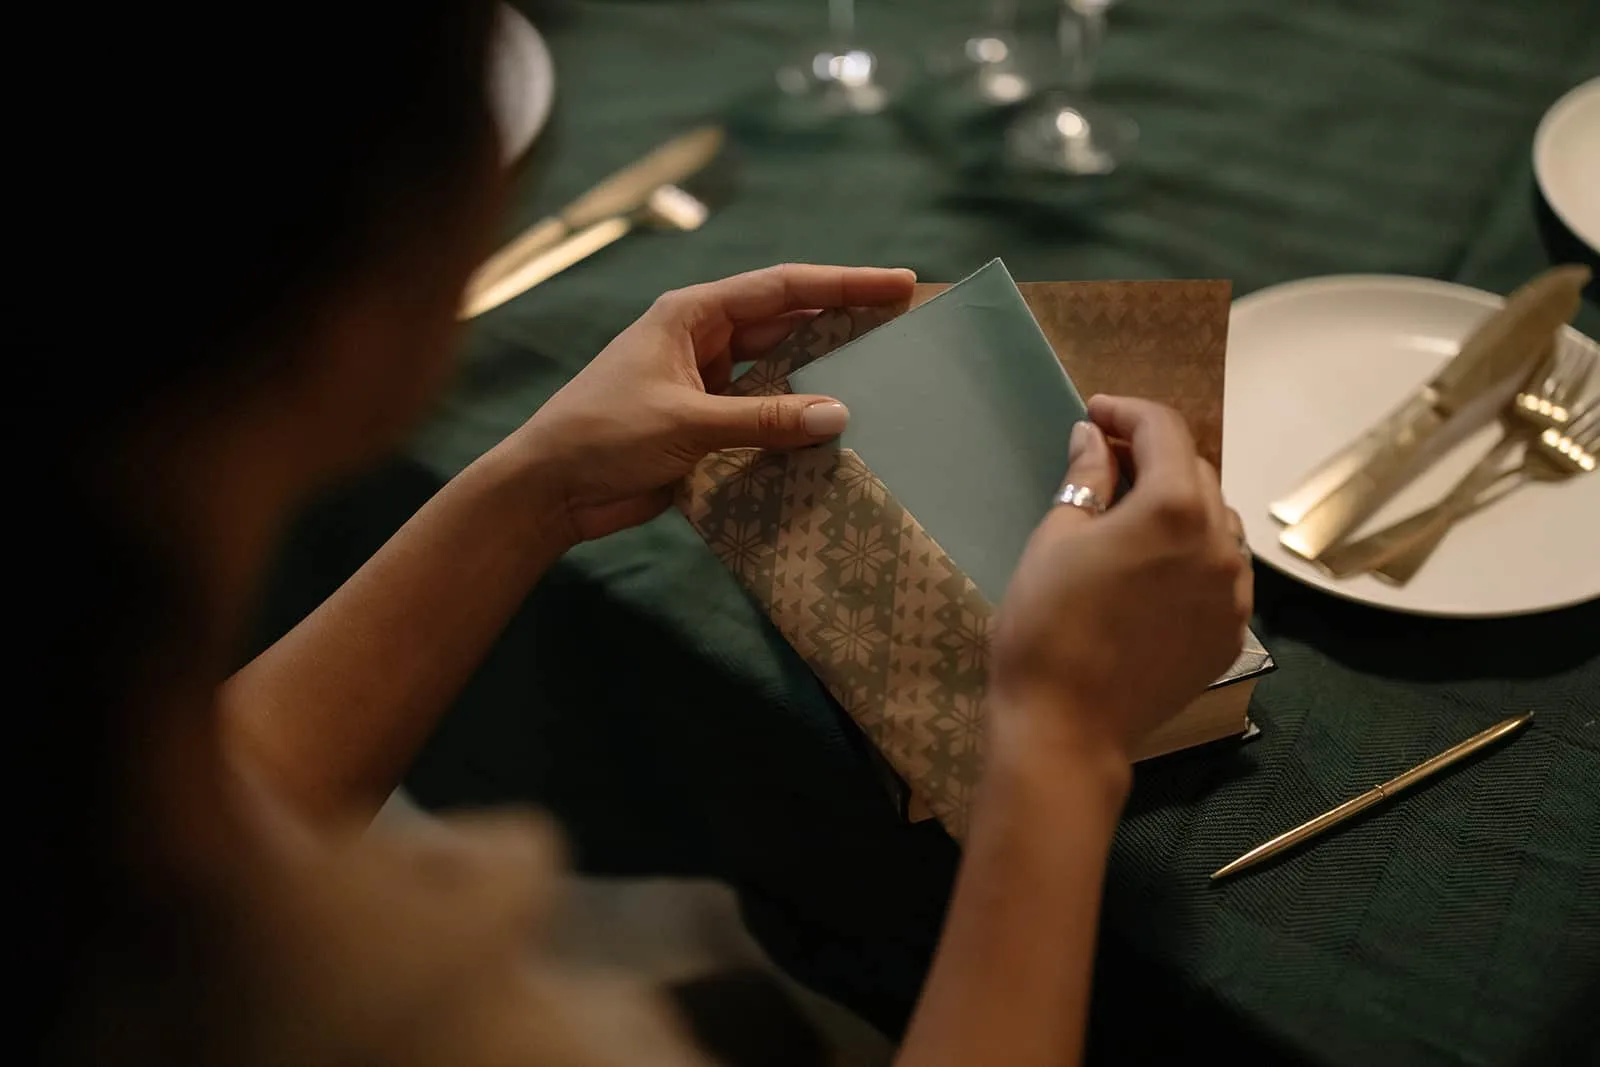 eine Frau, die einen Gutschein in einen Umschlag steckt, während sie am Tisch sitzt